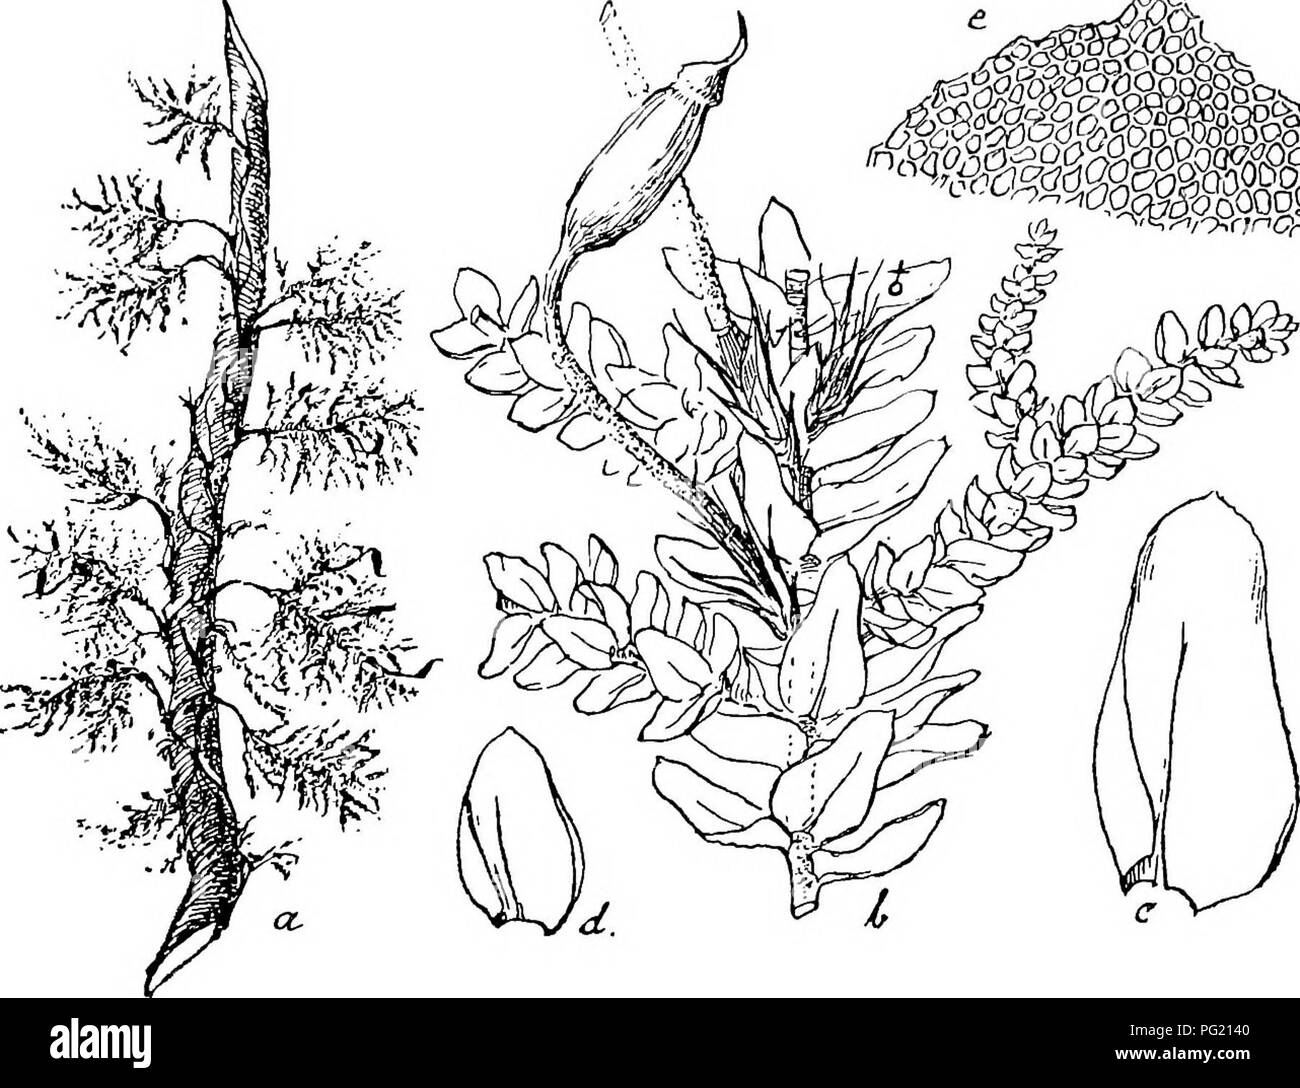 . Flore de Buitenzorg. Botany. Vaginiila ilberragend, mit zahlreichen 1 anger en Paraphysen. Seta hellgelb, 4—5 mm. lang, oben herabgebogen, deutlich Fig. 160. ^m ^. Pinnatella mucrojiata (La.c.). a. Habitusbild (natiirl. Griisse). c. Stengelblatt '^''. b. Secandares Stengelstiick mit Fiederiisten d. Astblatt. V. und Sporogon . c. Zellen der Blattspitze —7-. papillos. Kapsel regelmassig, langlich-ovoidiseh, geneigt, unter der Miindung yerengt; Urne bis 2 mm. lang; Epidermis- zellen locker, 5—6 seitig, an der Miindung mehrere Reihen kleiner, am Grunde mit runden, phaneroporen Spaltoflfnungen;  Stock Photo